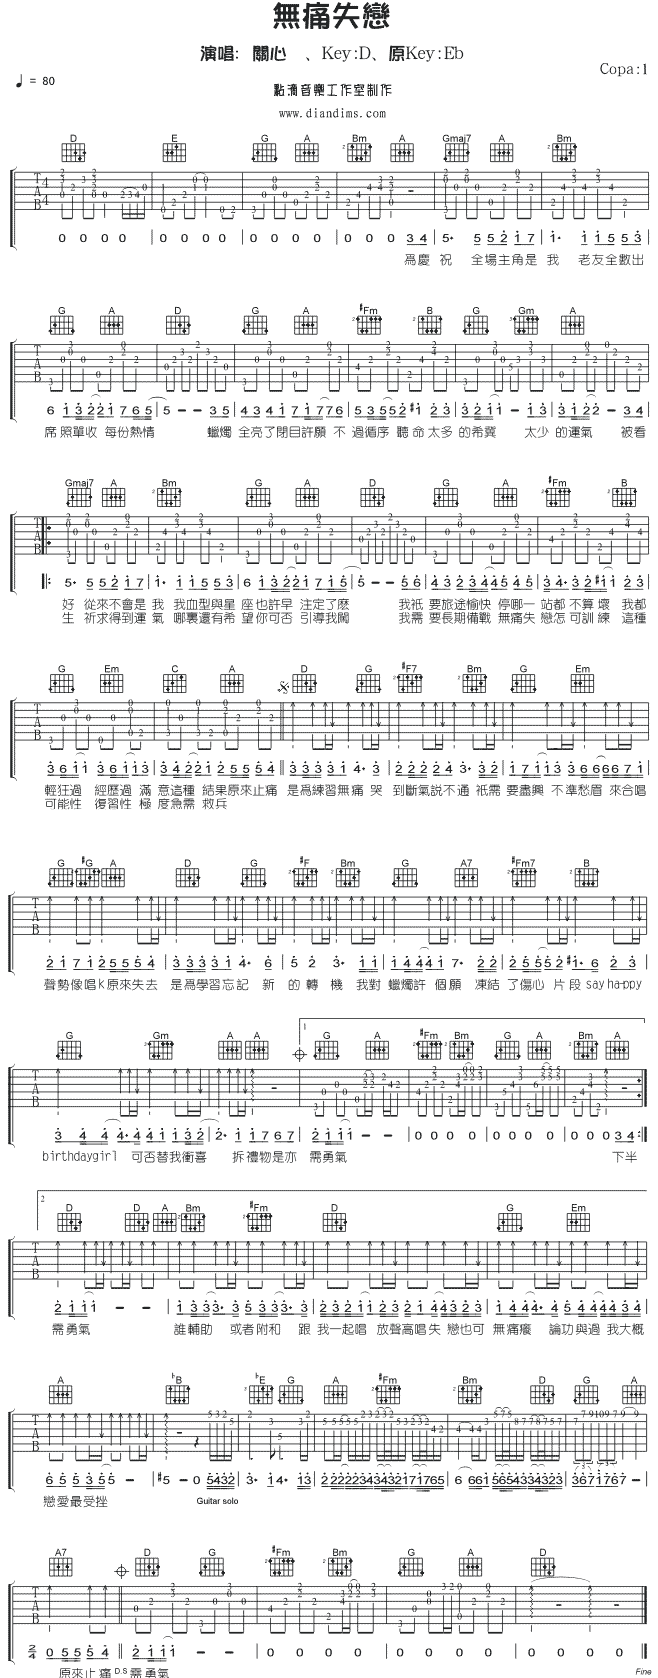 无痛失恋吉他谱-91吉他谱